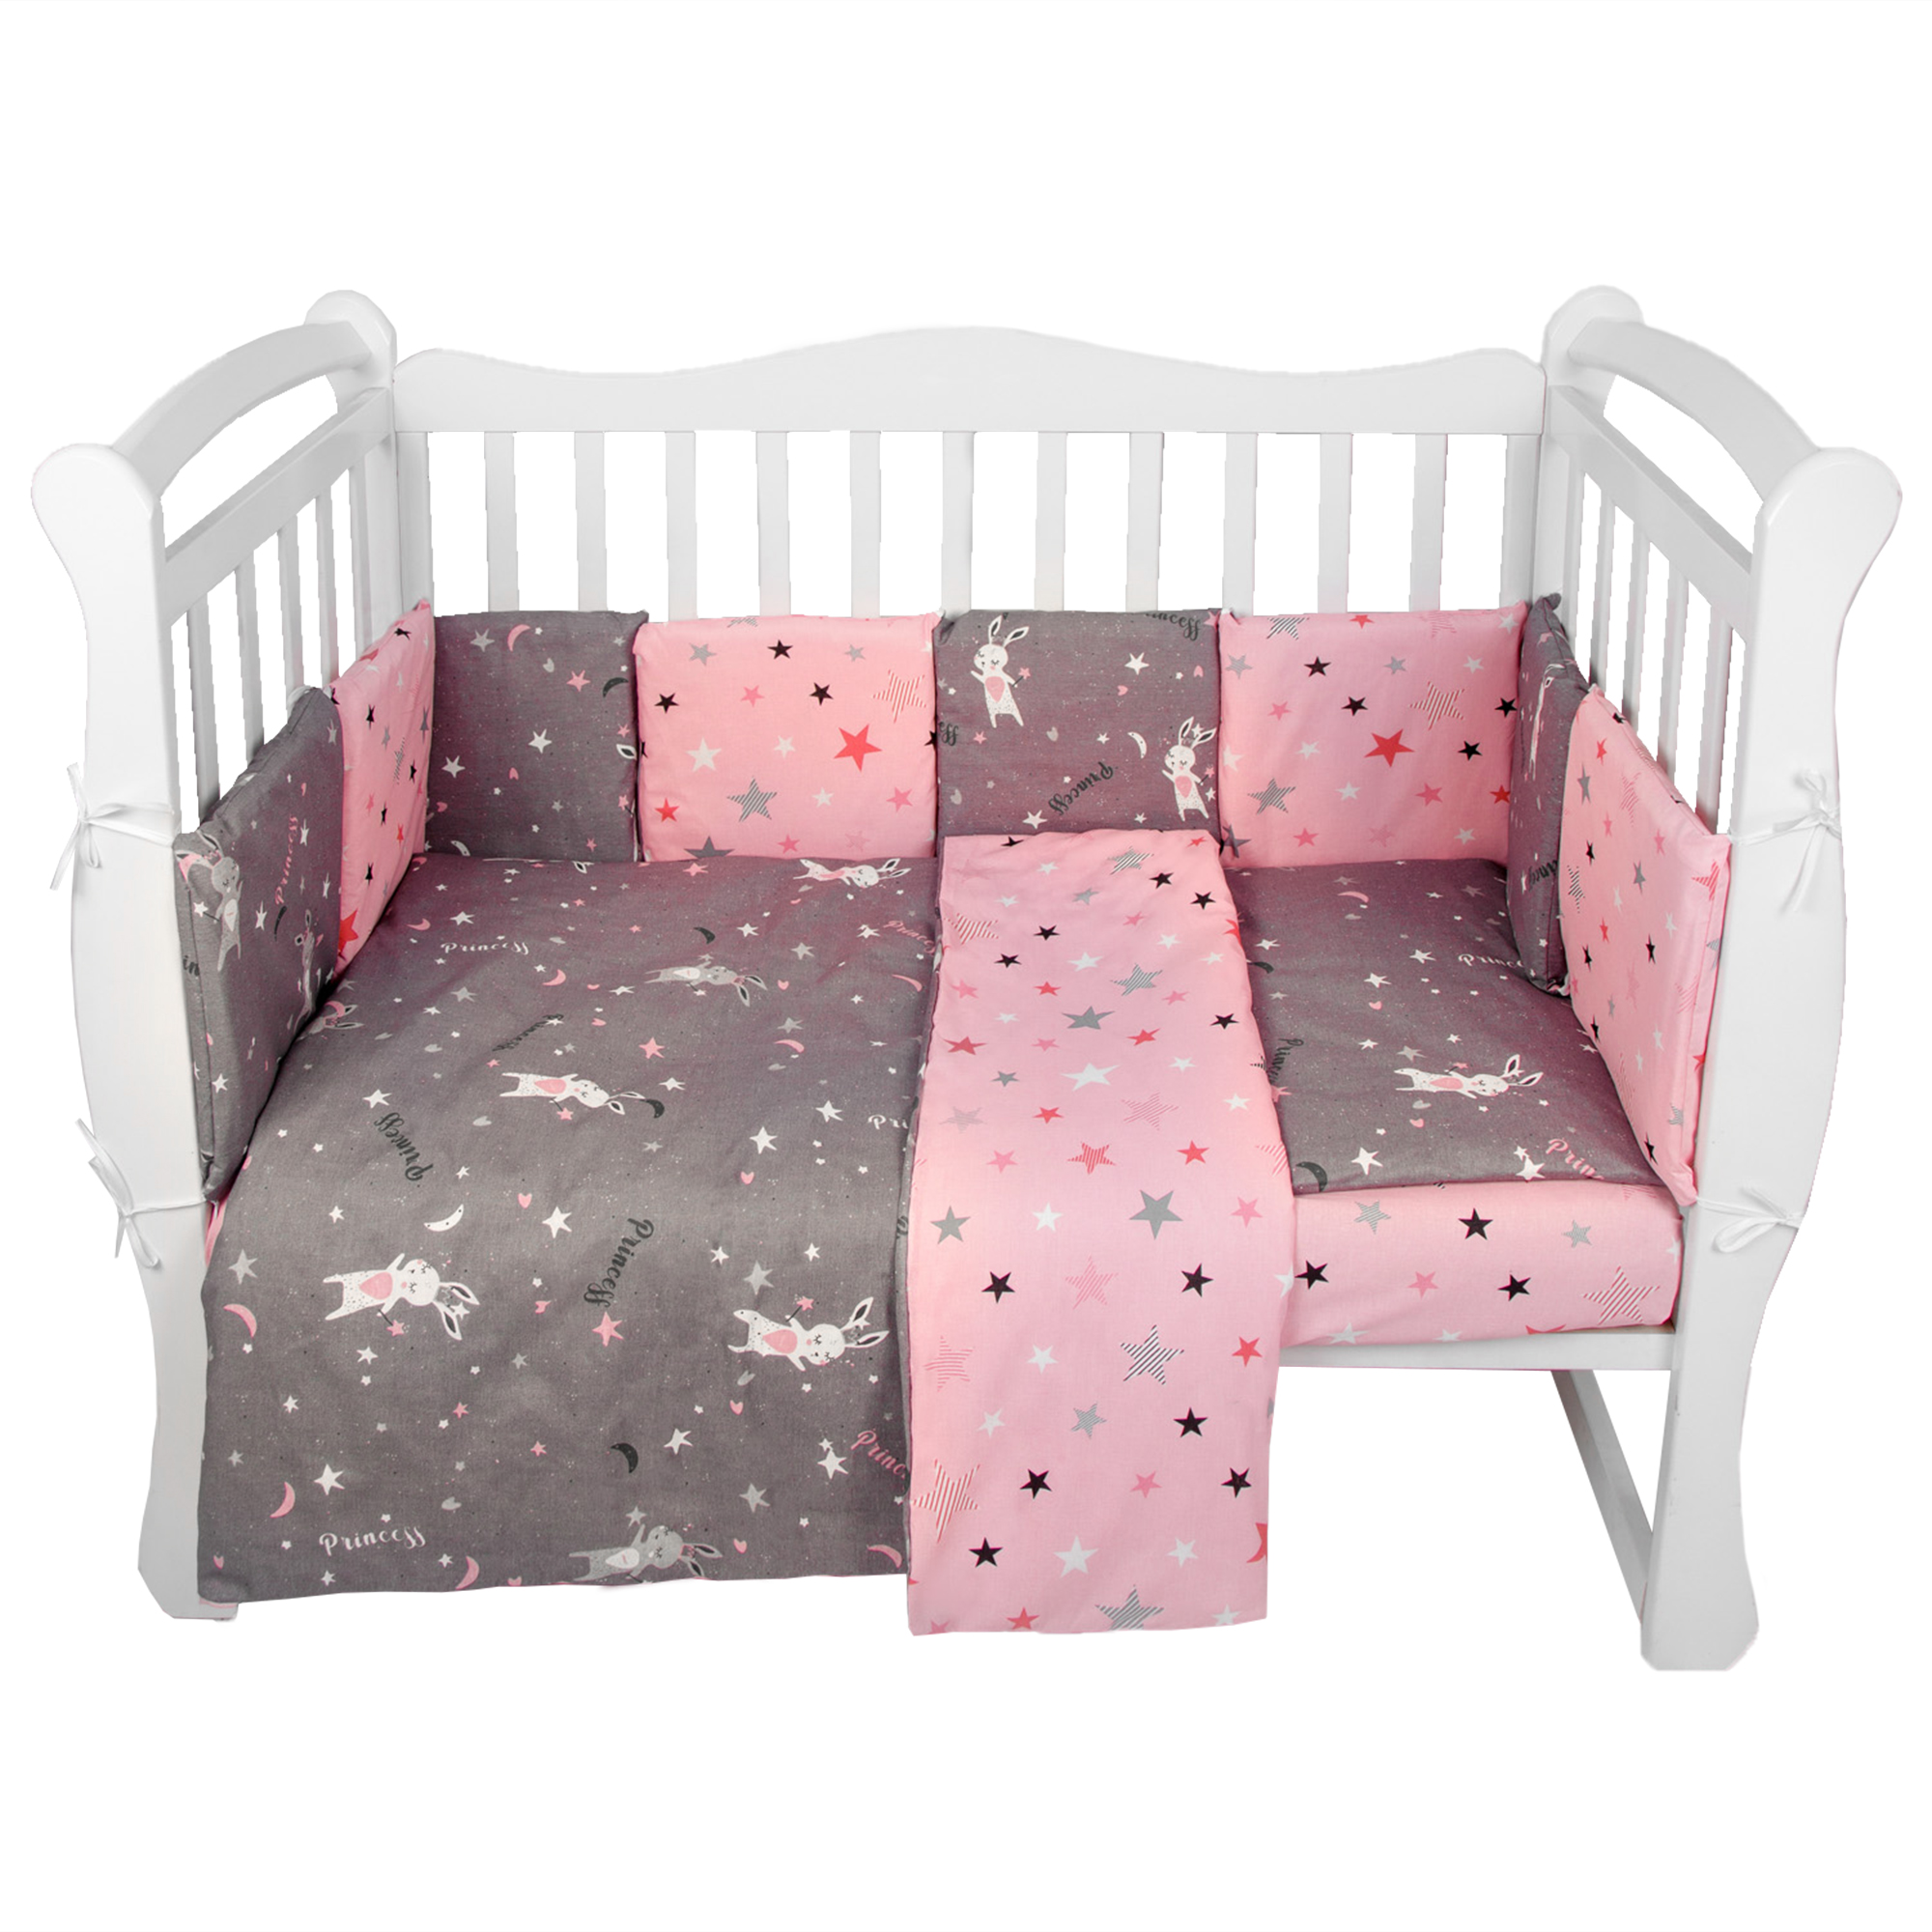 Комплект в кроватку AmaroBaby 15 предметов Premium Princess серый/розовый комплект в кроватку amarobaby зайчики 15 предметов